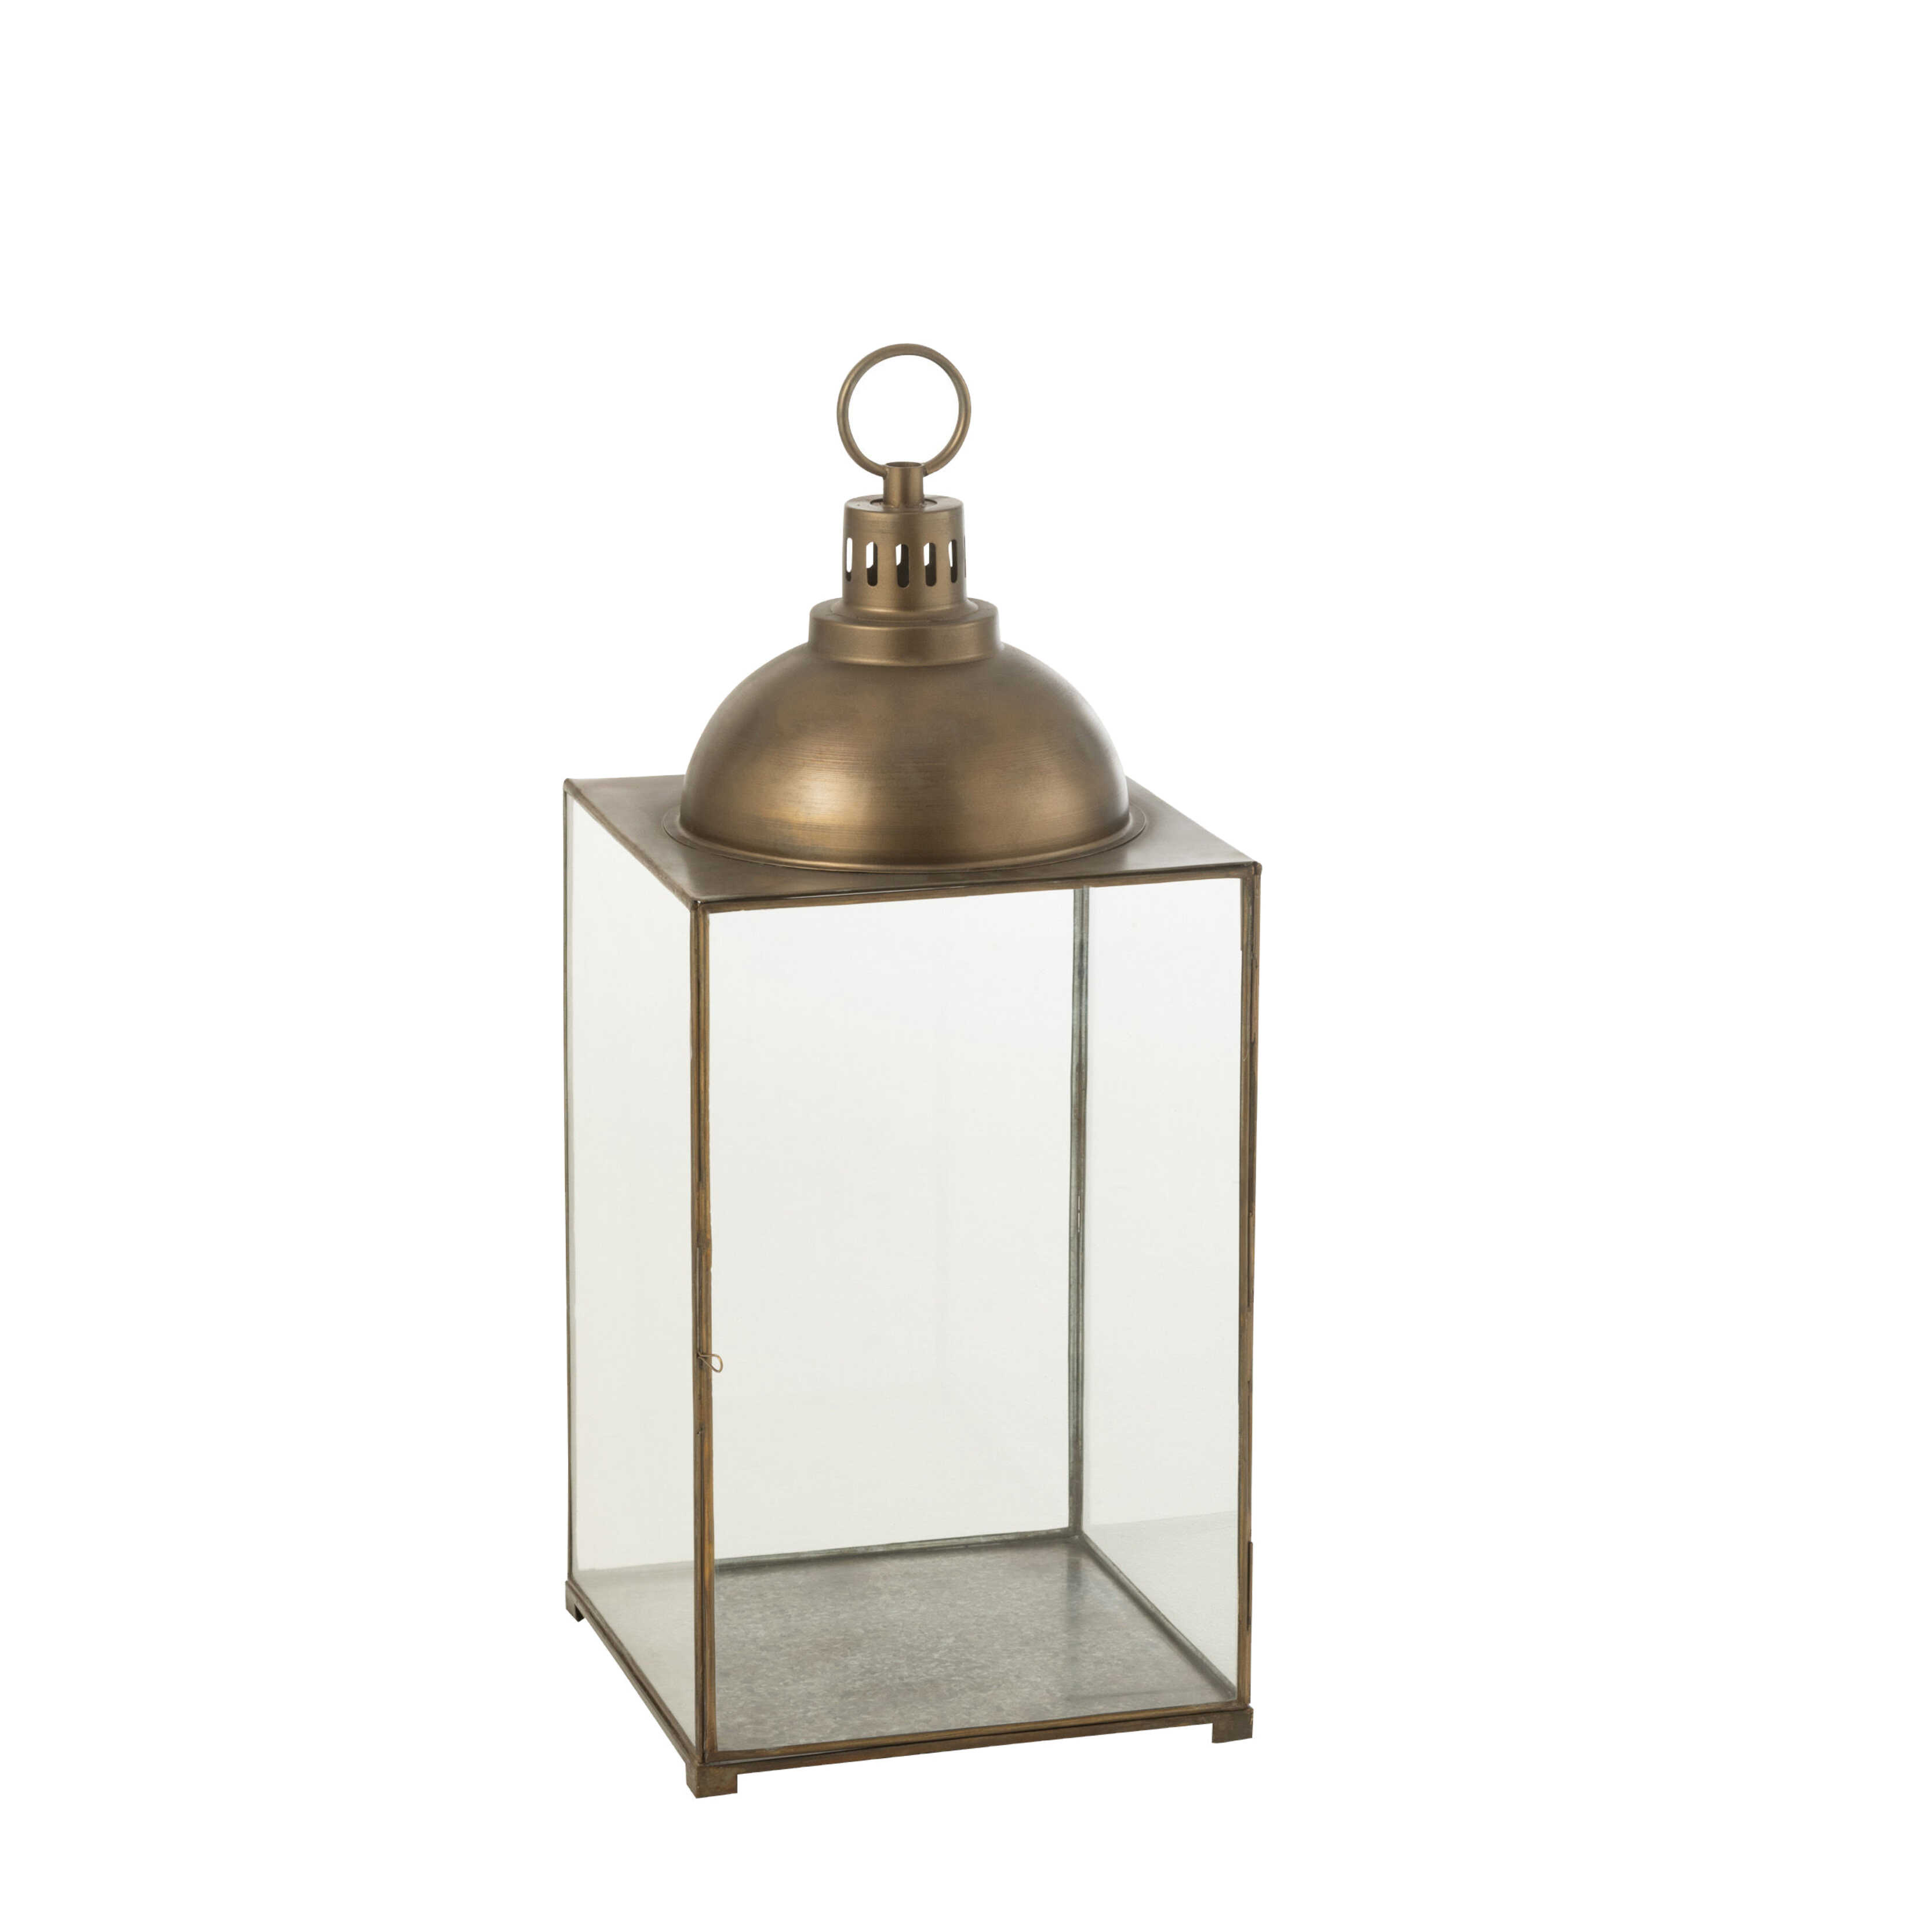 Kæmpe lanterne i bronze farvet jern - 85 cm